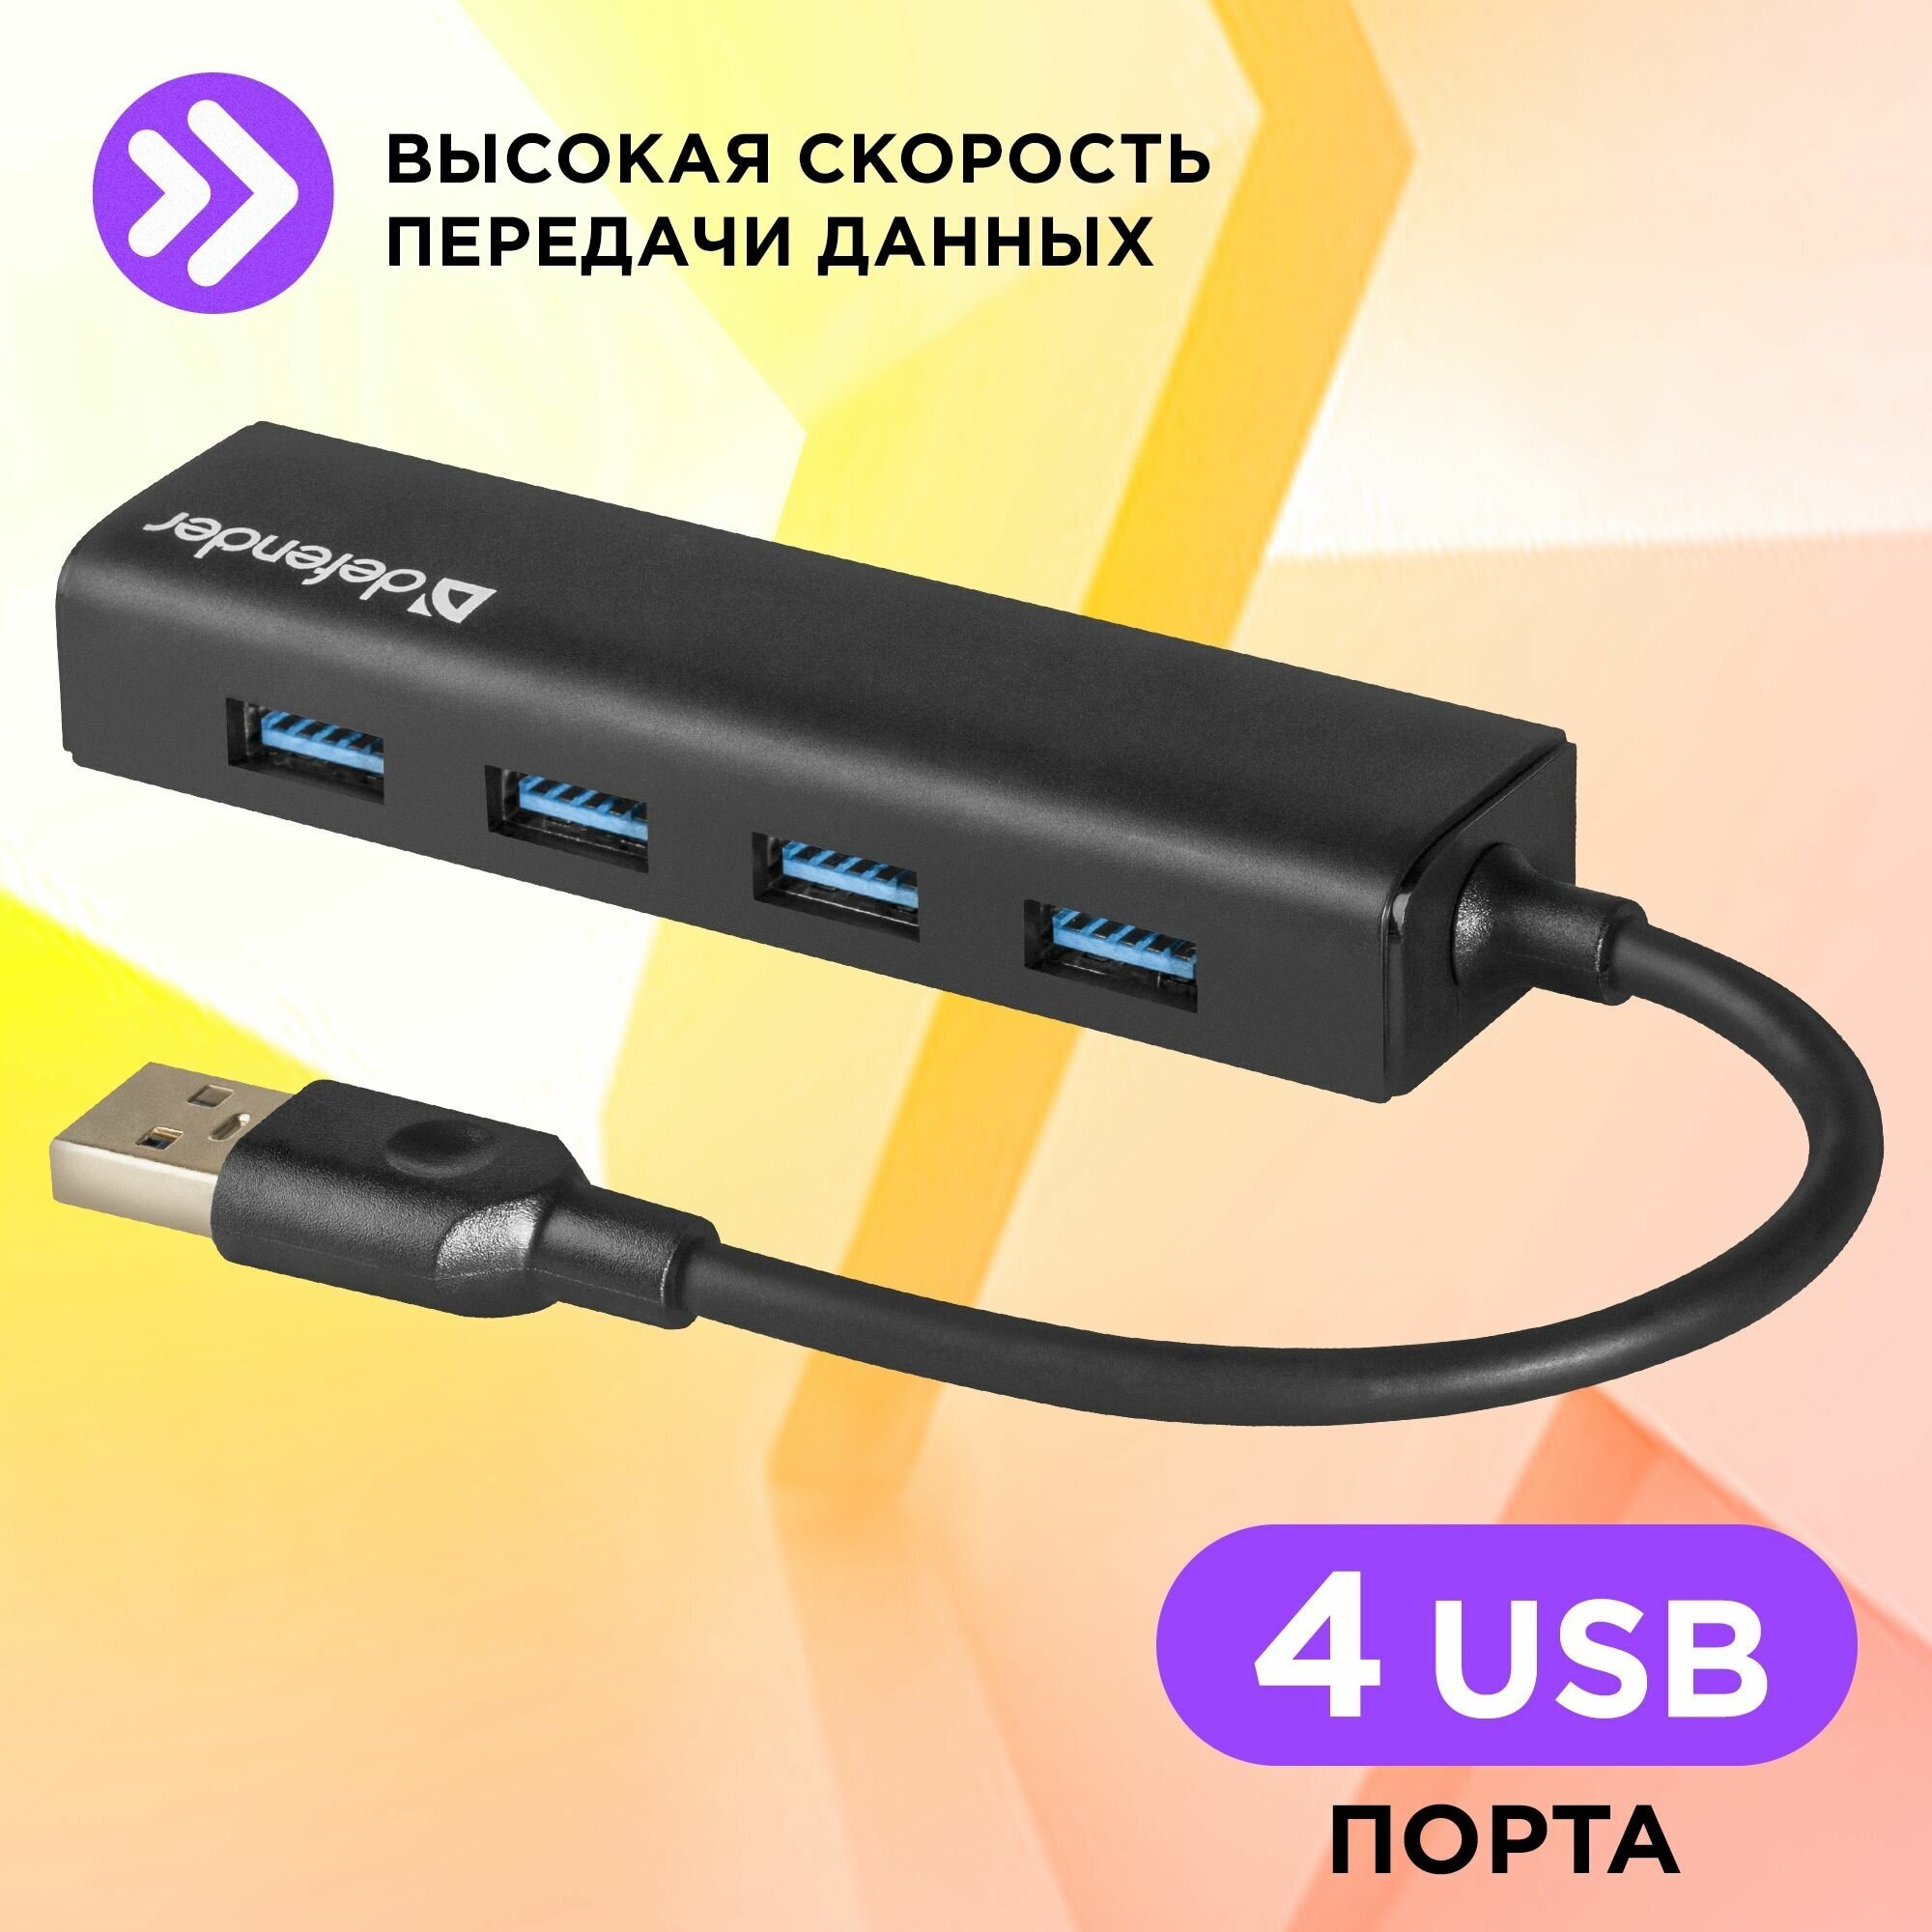 USB-концентратор Defender Quadro Express (83204) разъемов: 4